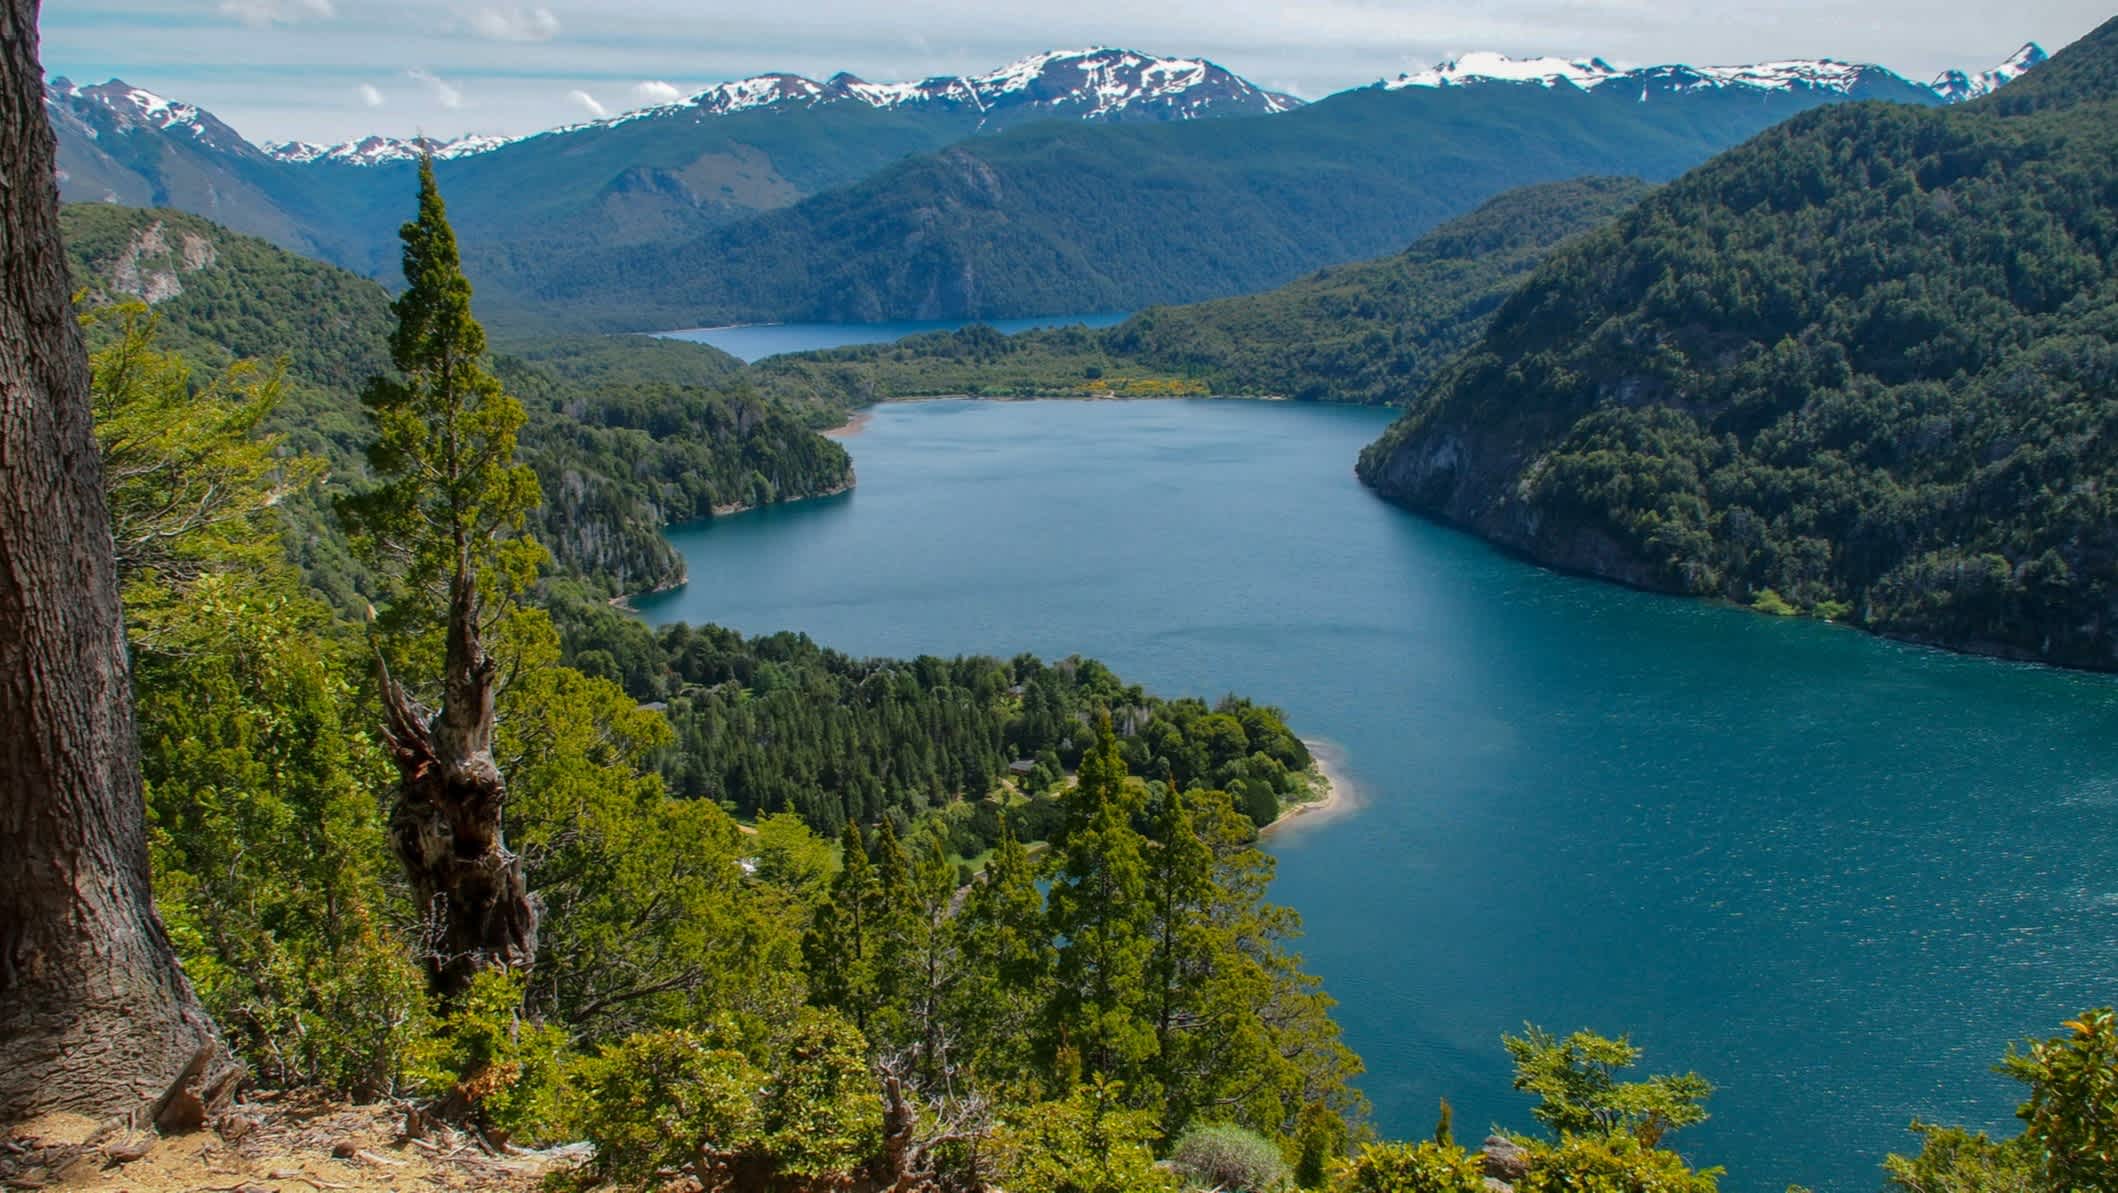 Blick auf den Lago verde See im Nationalpark Los Alerces, Argentinien